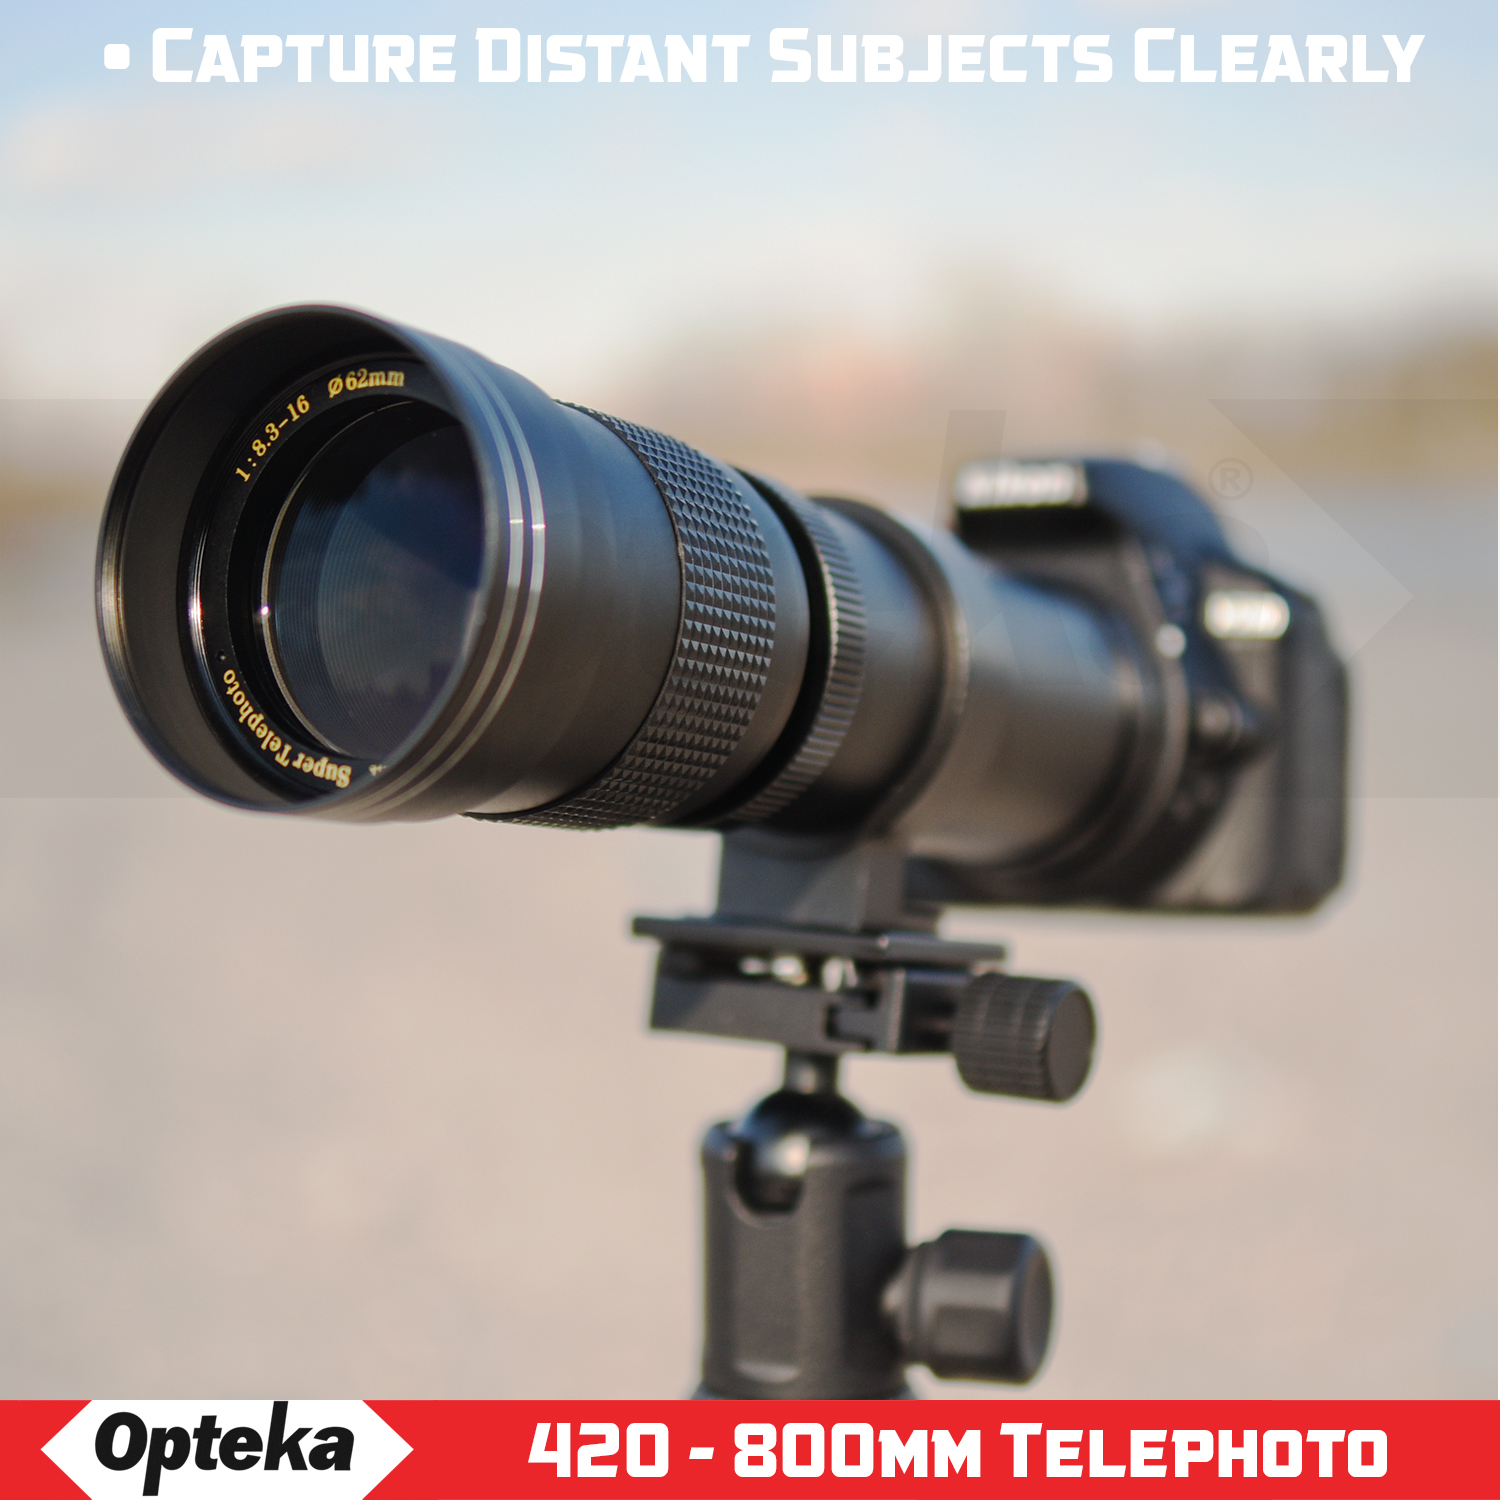 Opteka 420-800mm f/8.3 Telephoto Zoom Lens for Nikon Z6, Z7, Z50 Digital Mirrorless Digital SLR Cameras - image 2 of 10